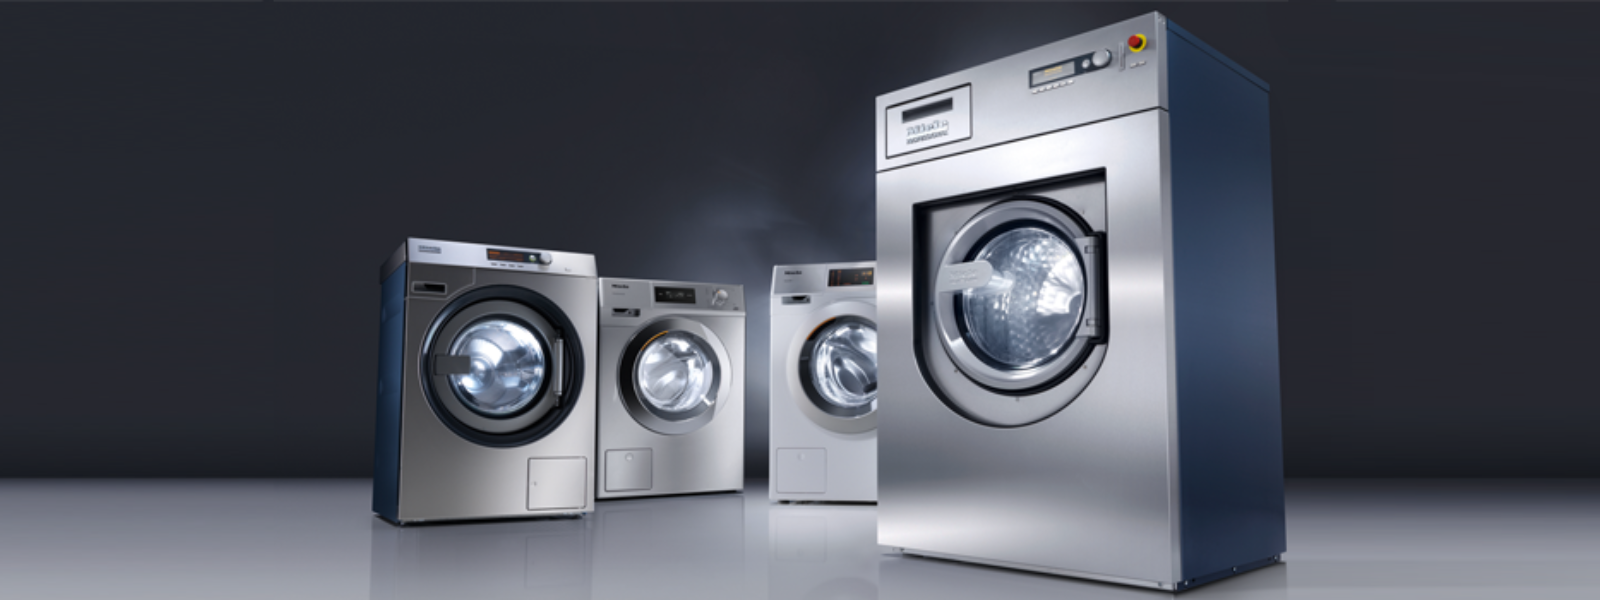 DESTEIN OÜ - Miele pesumajaseadmed - pesumasinad, kuivatid, triikimiskalandrid. Innovatsiooni liidrid, esindades optimaal...